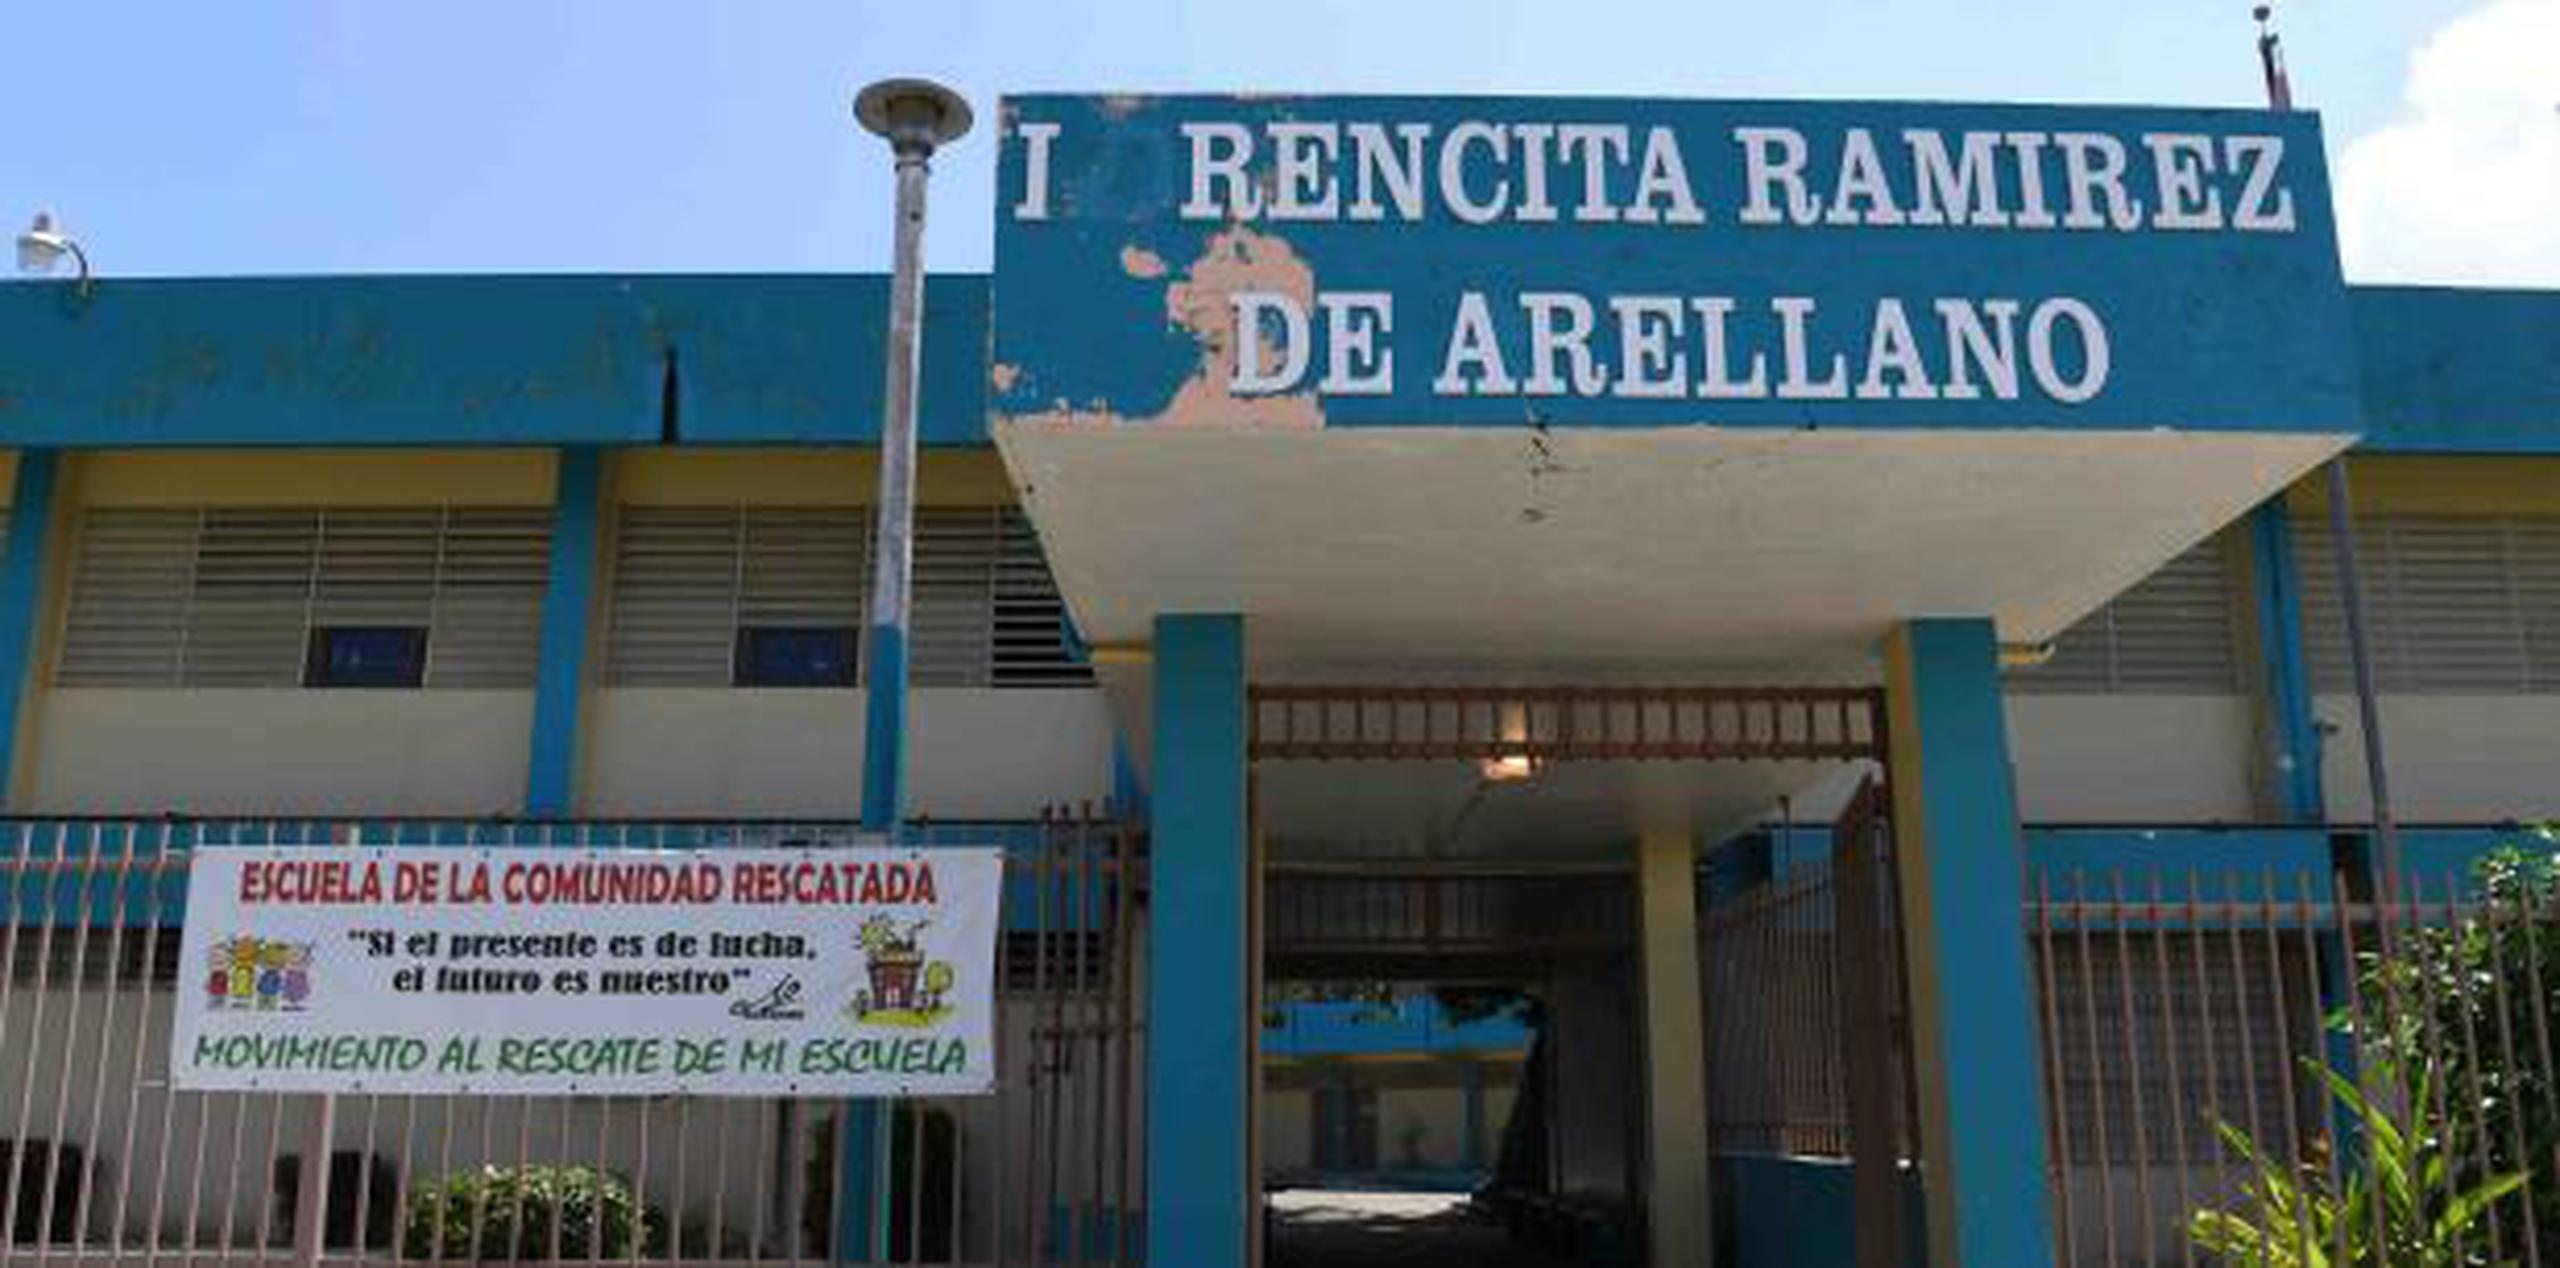 El plantel Lorencita Ramírez de Arellano también enfrenta la amenaza de un corte de luz por parte de la Autoridad de Energía Eléctrica, lo que impediría continuar con sus servicios. (luis.alcaladelolmo@gfrmedia.com)